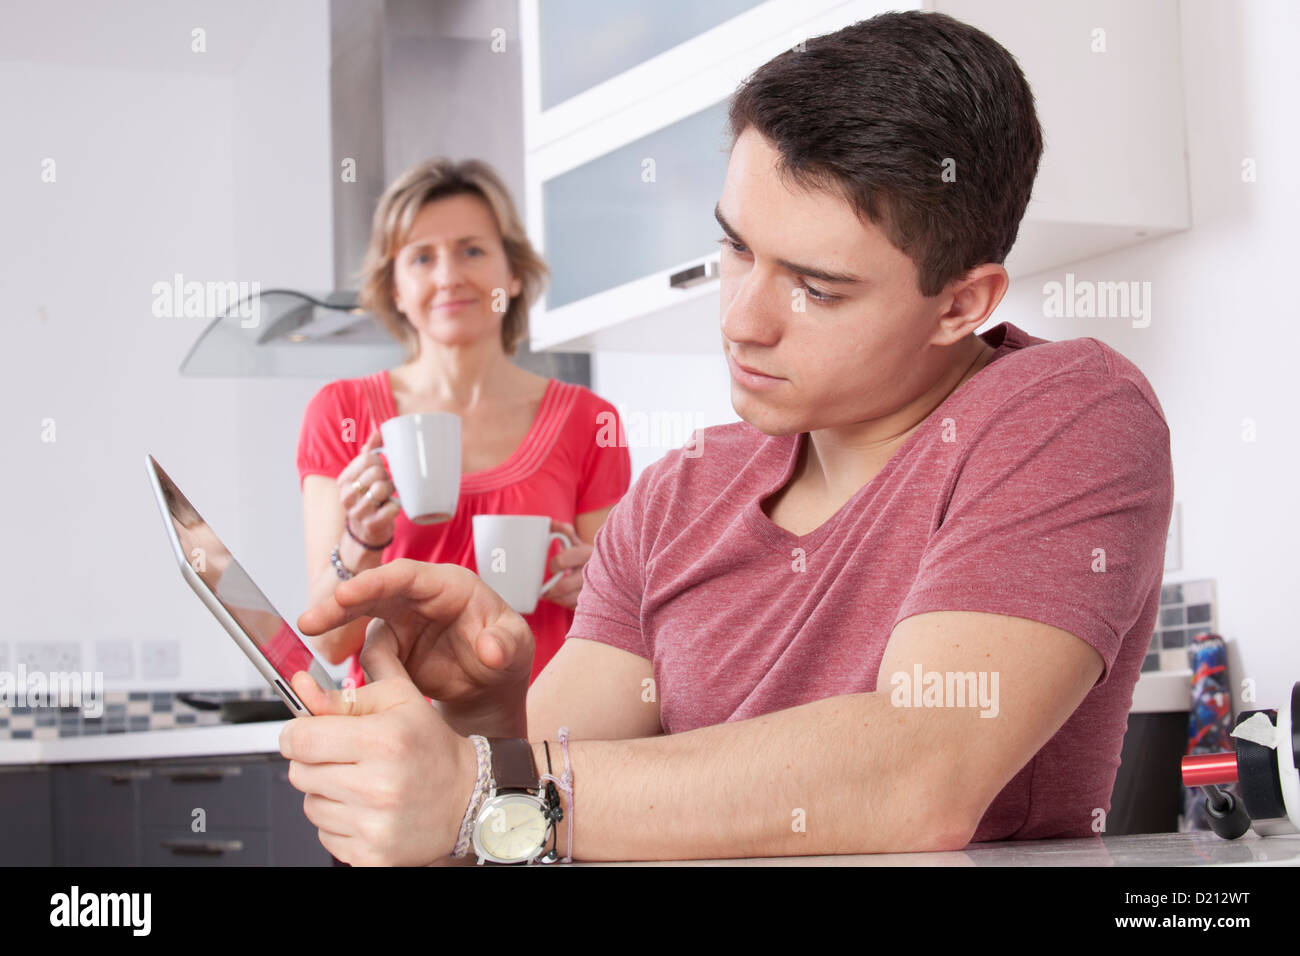 Jeune homme à l'aide d'une tablette numérique à la recherche à l'écran ou moniteur. Situé dans une cuisine moderne une femme tenant deux mugs sourit. Banque D'Images